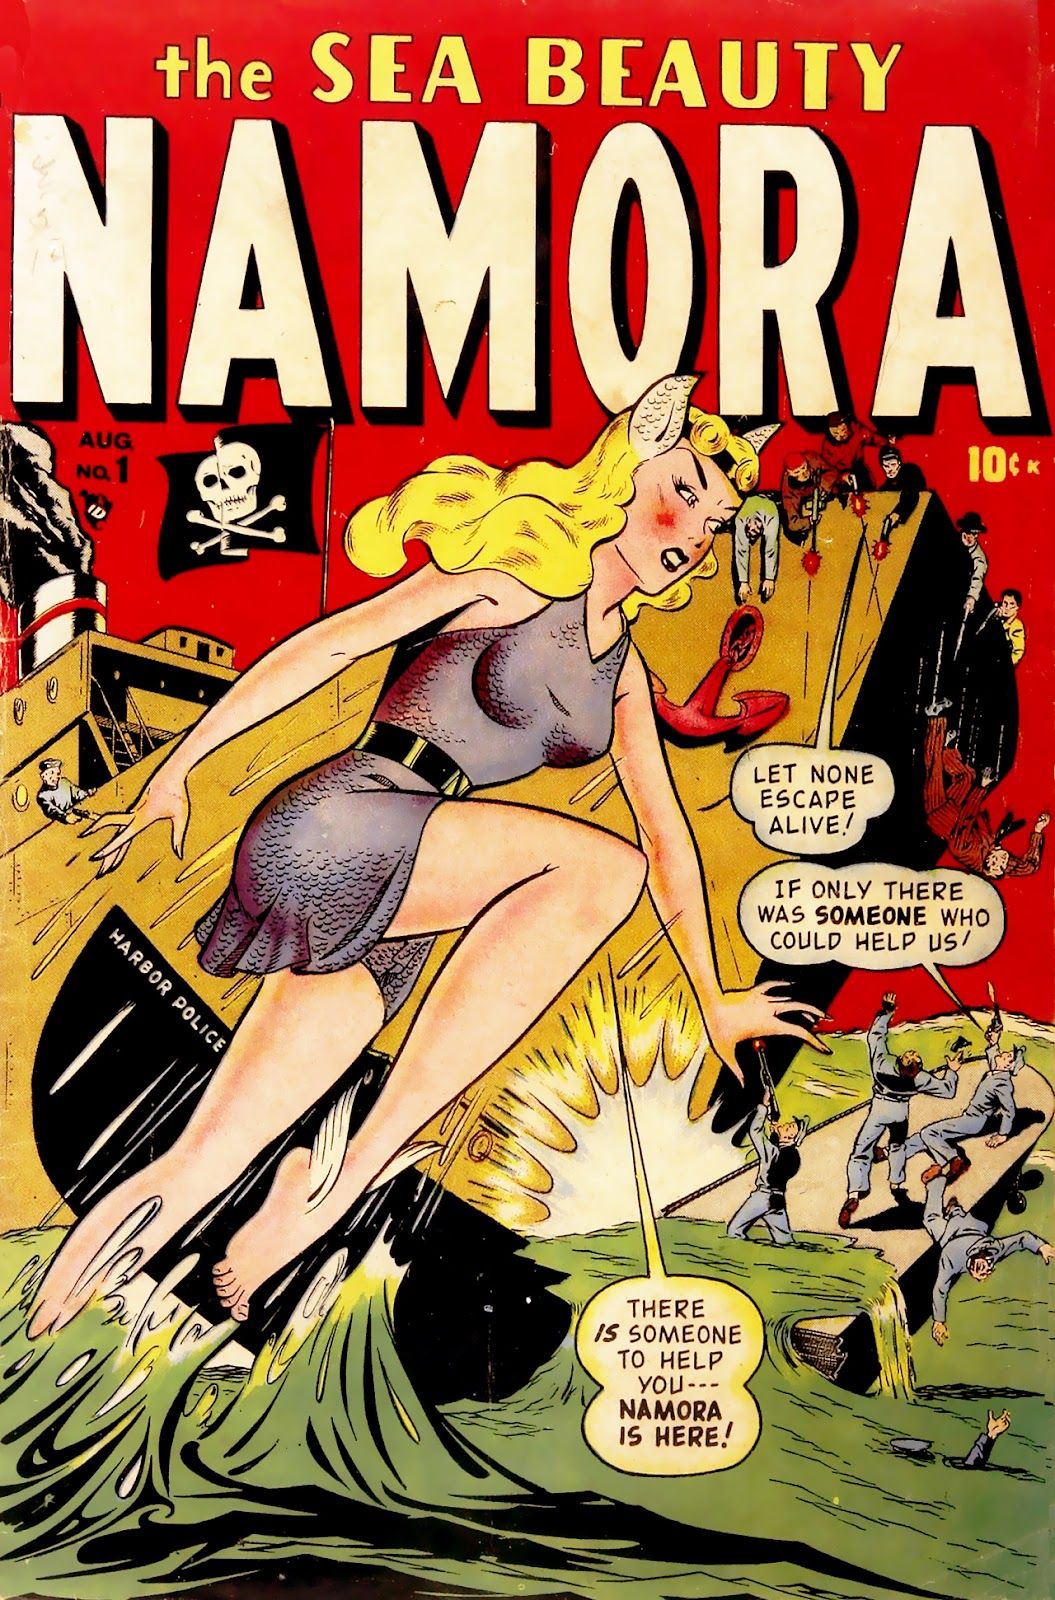 Namora debuts in her own comic